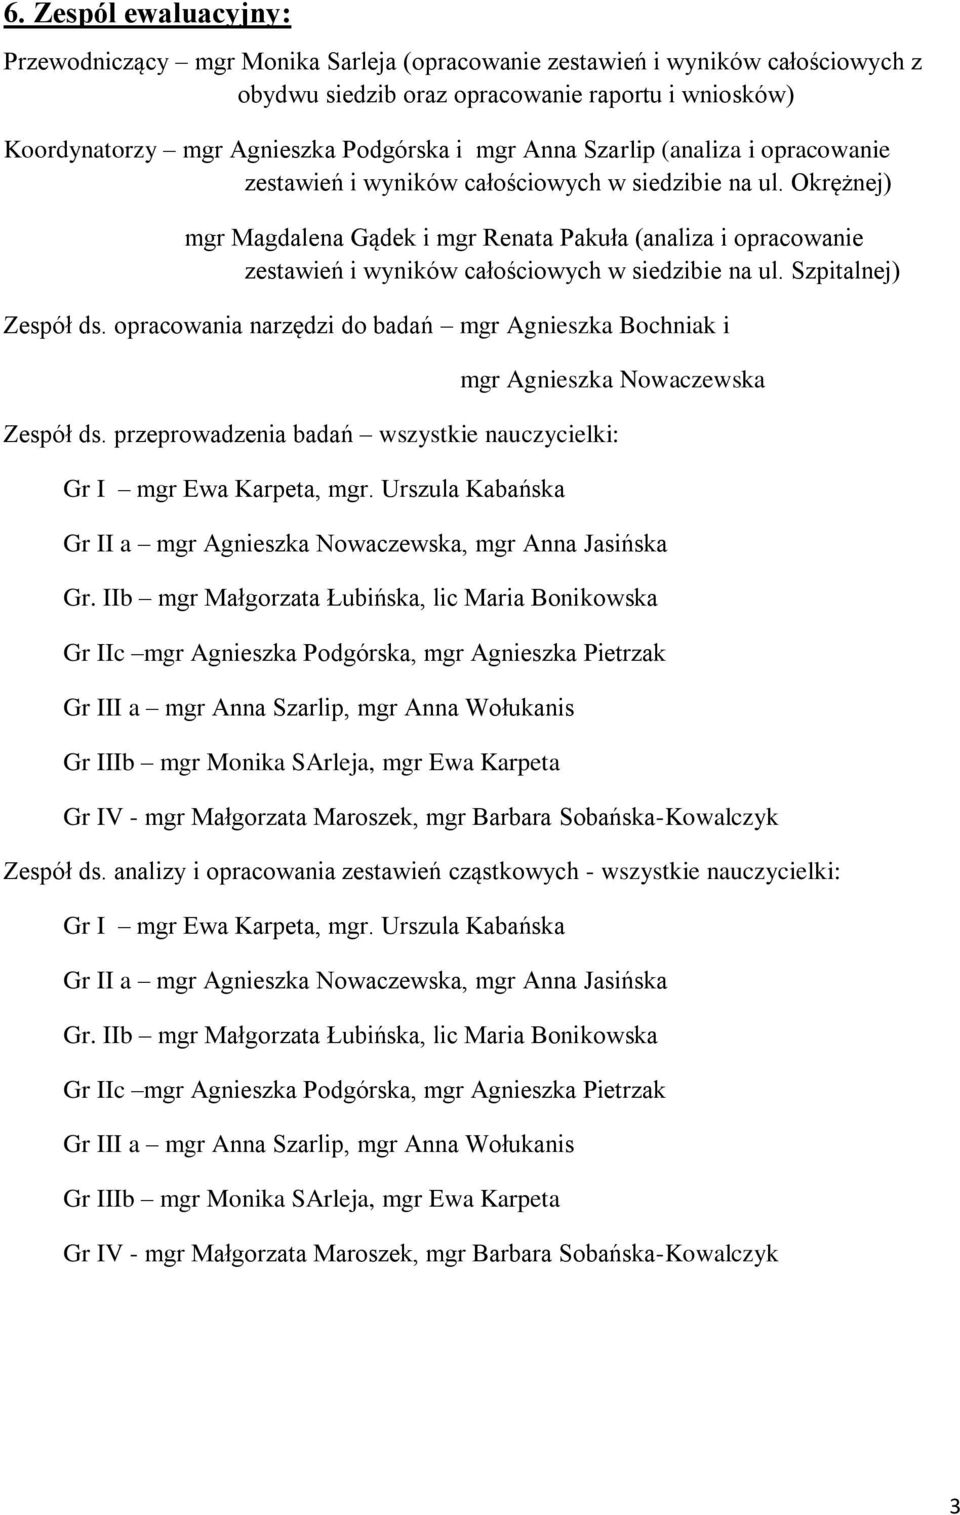 Okrężnej) mgr Magdalena Gądek i mgr Renata Pakuła (analiza i opracowanie zestawień i wyników całościowych w siedzibie na ul. Szpitalnej) Zespół ds.